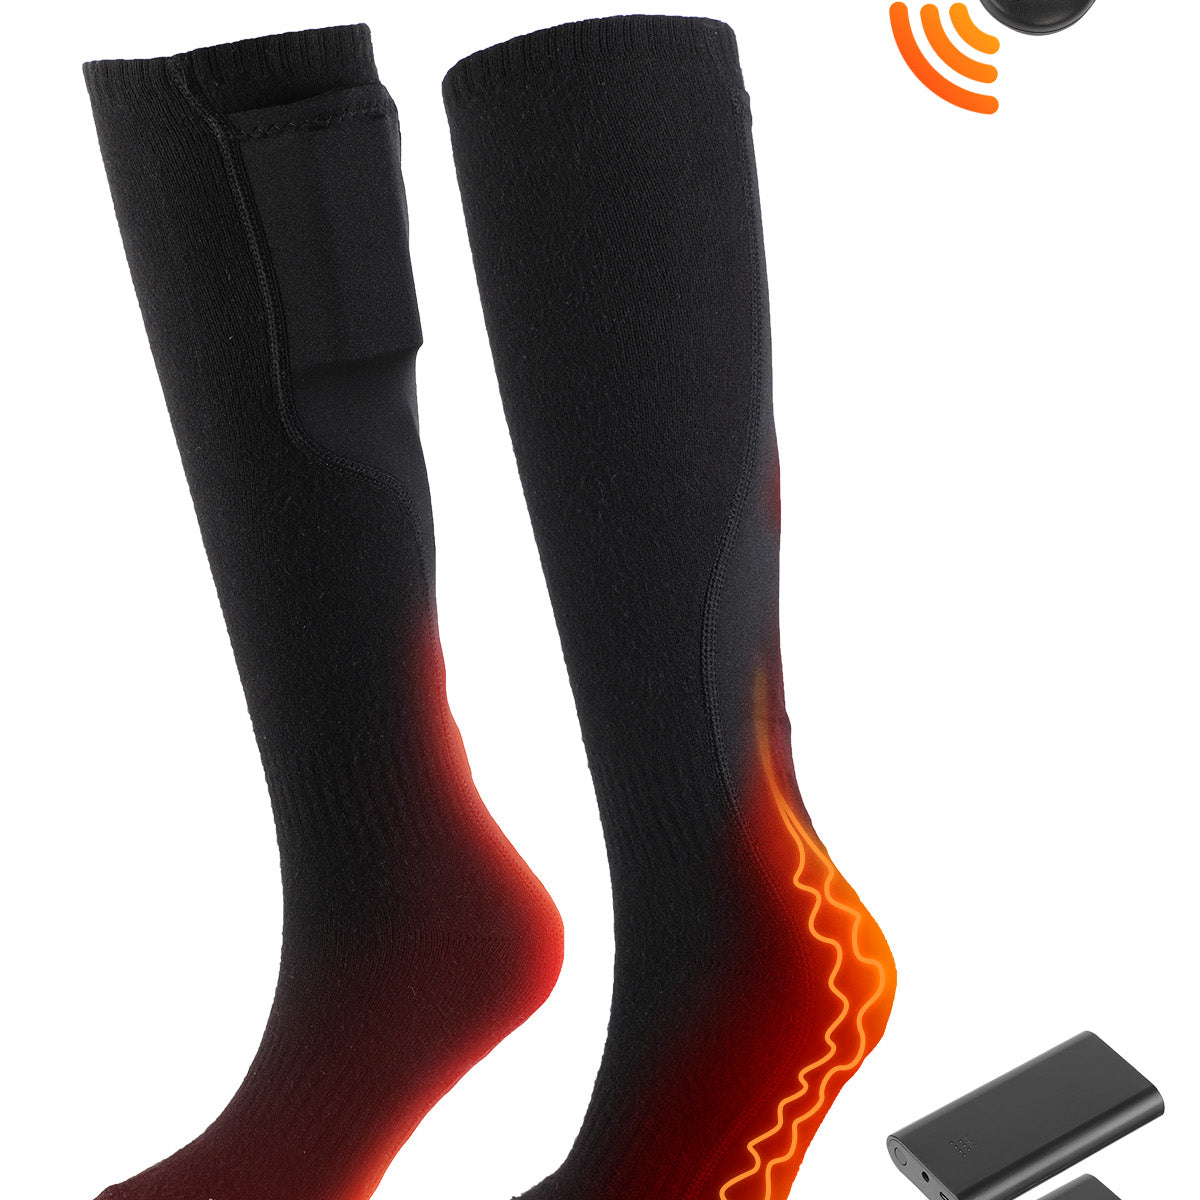 Heated Socks – nevelandgear